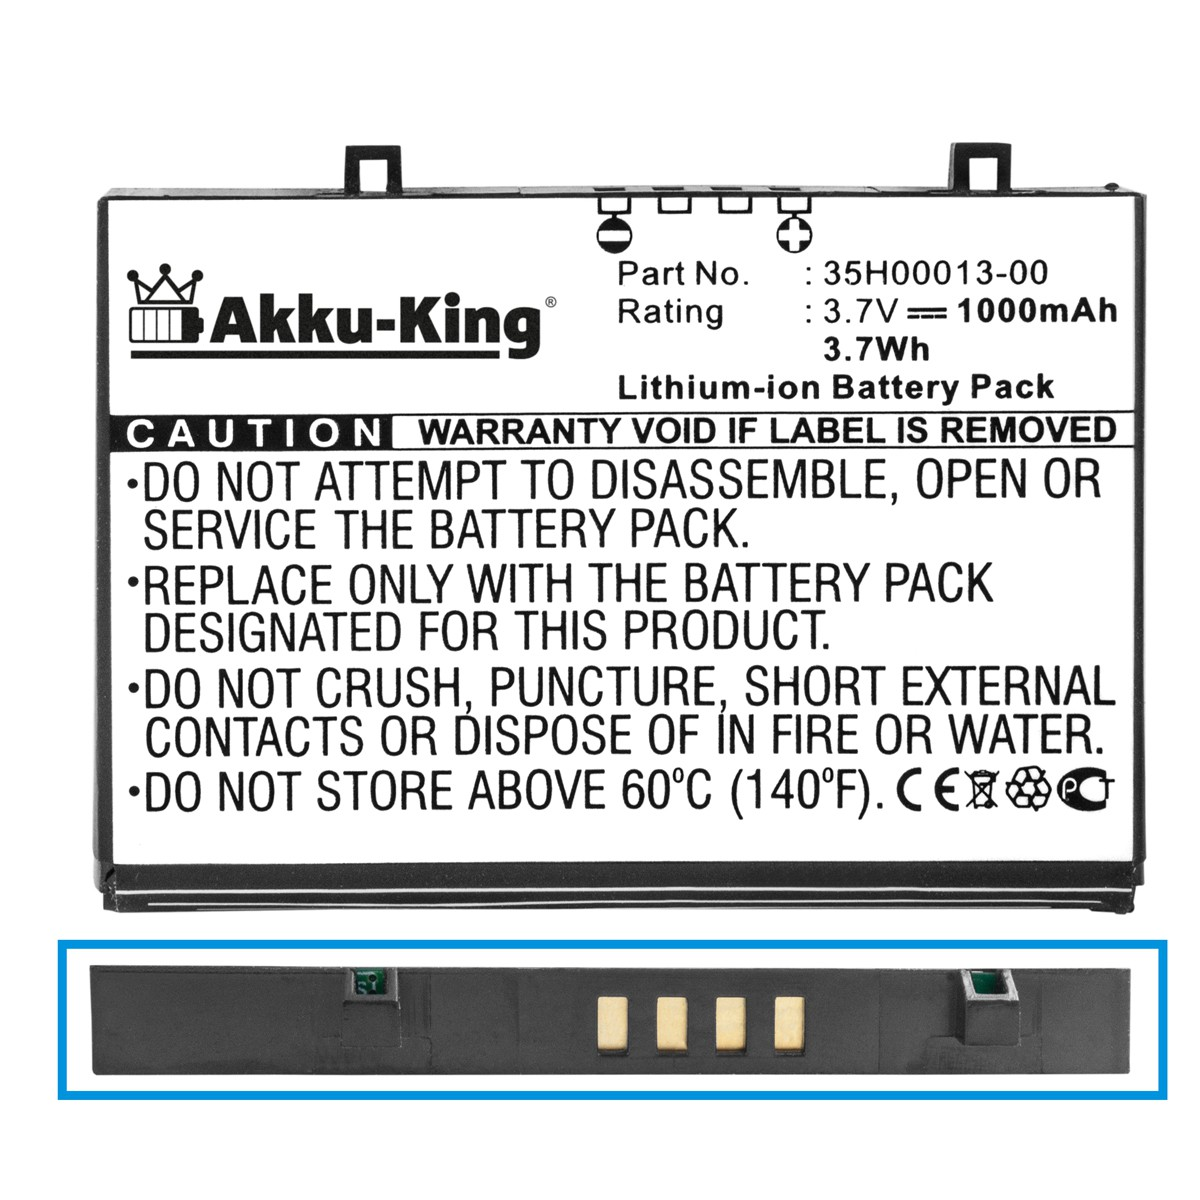 AKKU-KING Akku Volt, kompatibel mit FA110A Handy-Akku, 3.7 Li-Ion HP 1000mAh